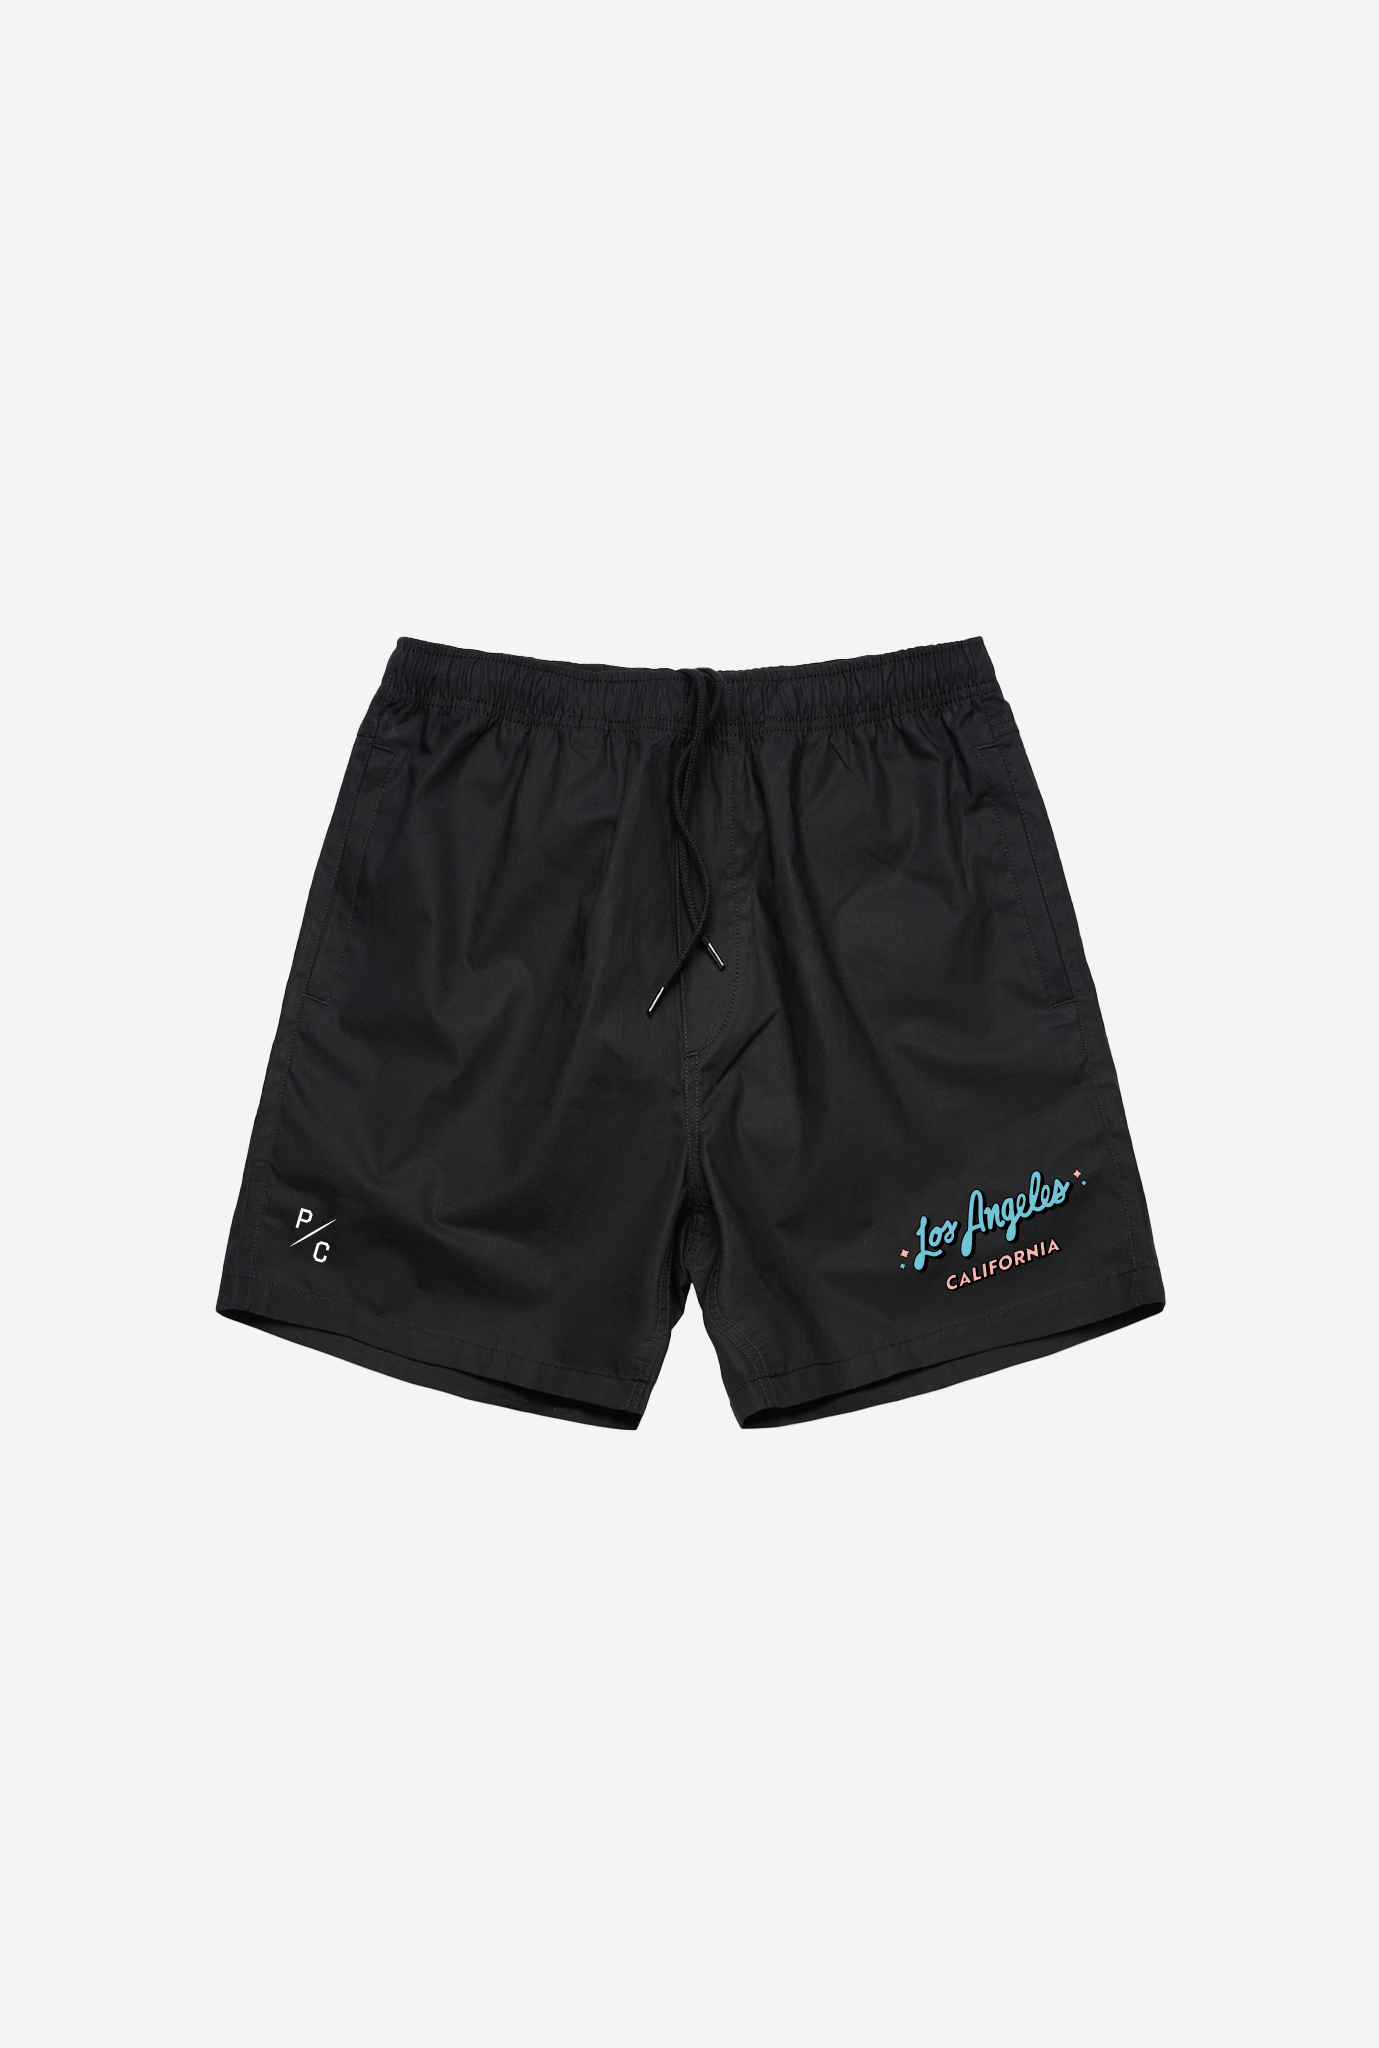 Los Angeles Board Shorts - Black